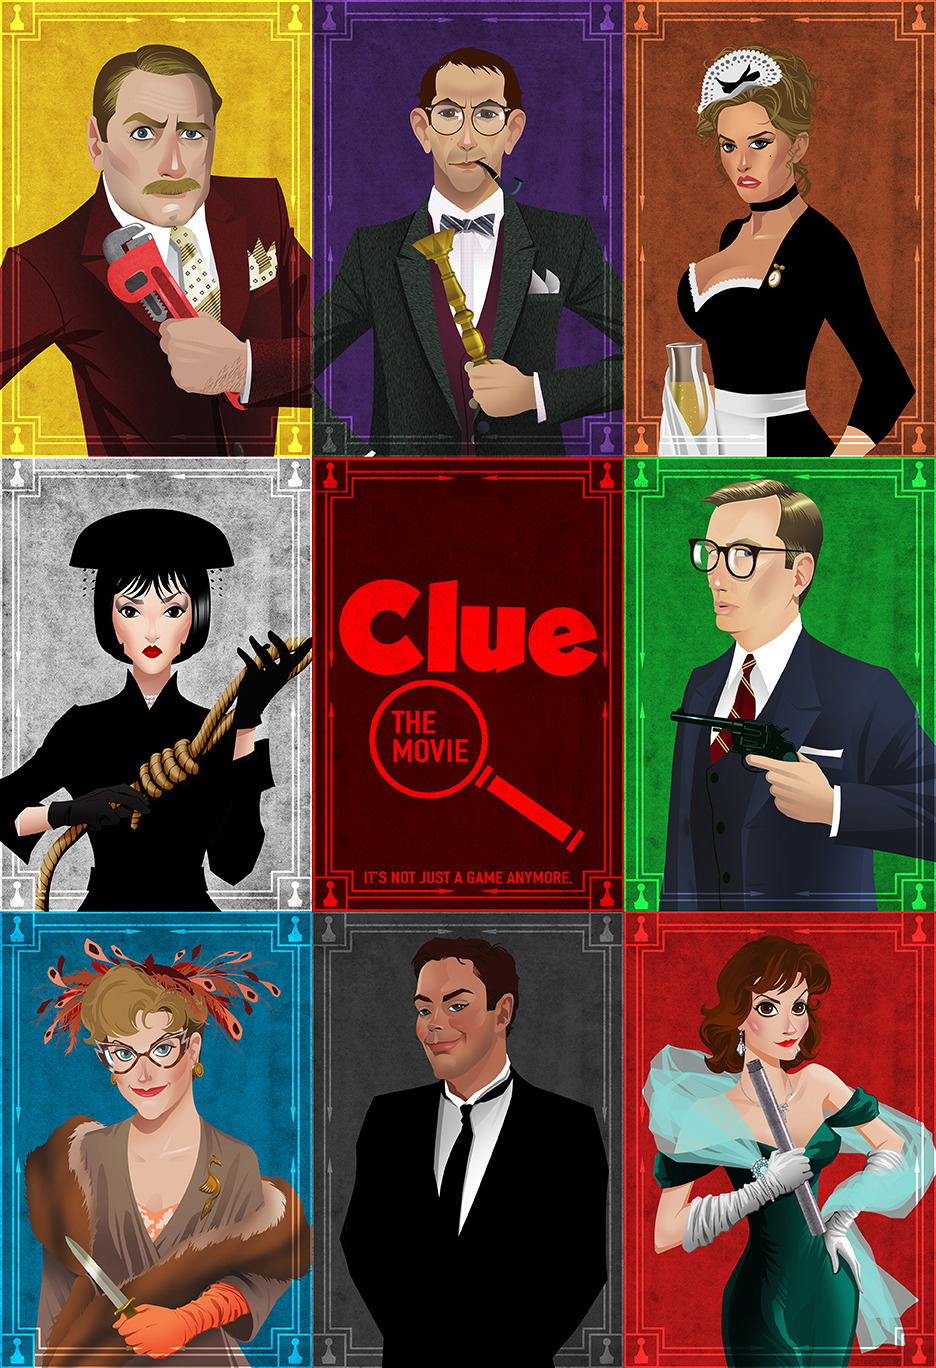 Sony planea llevar 'Clue' a cine y televisión 31